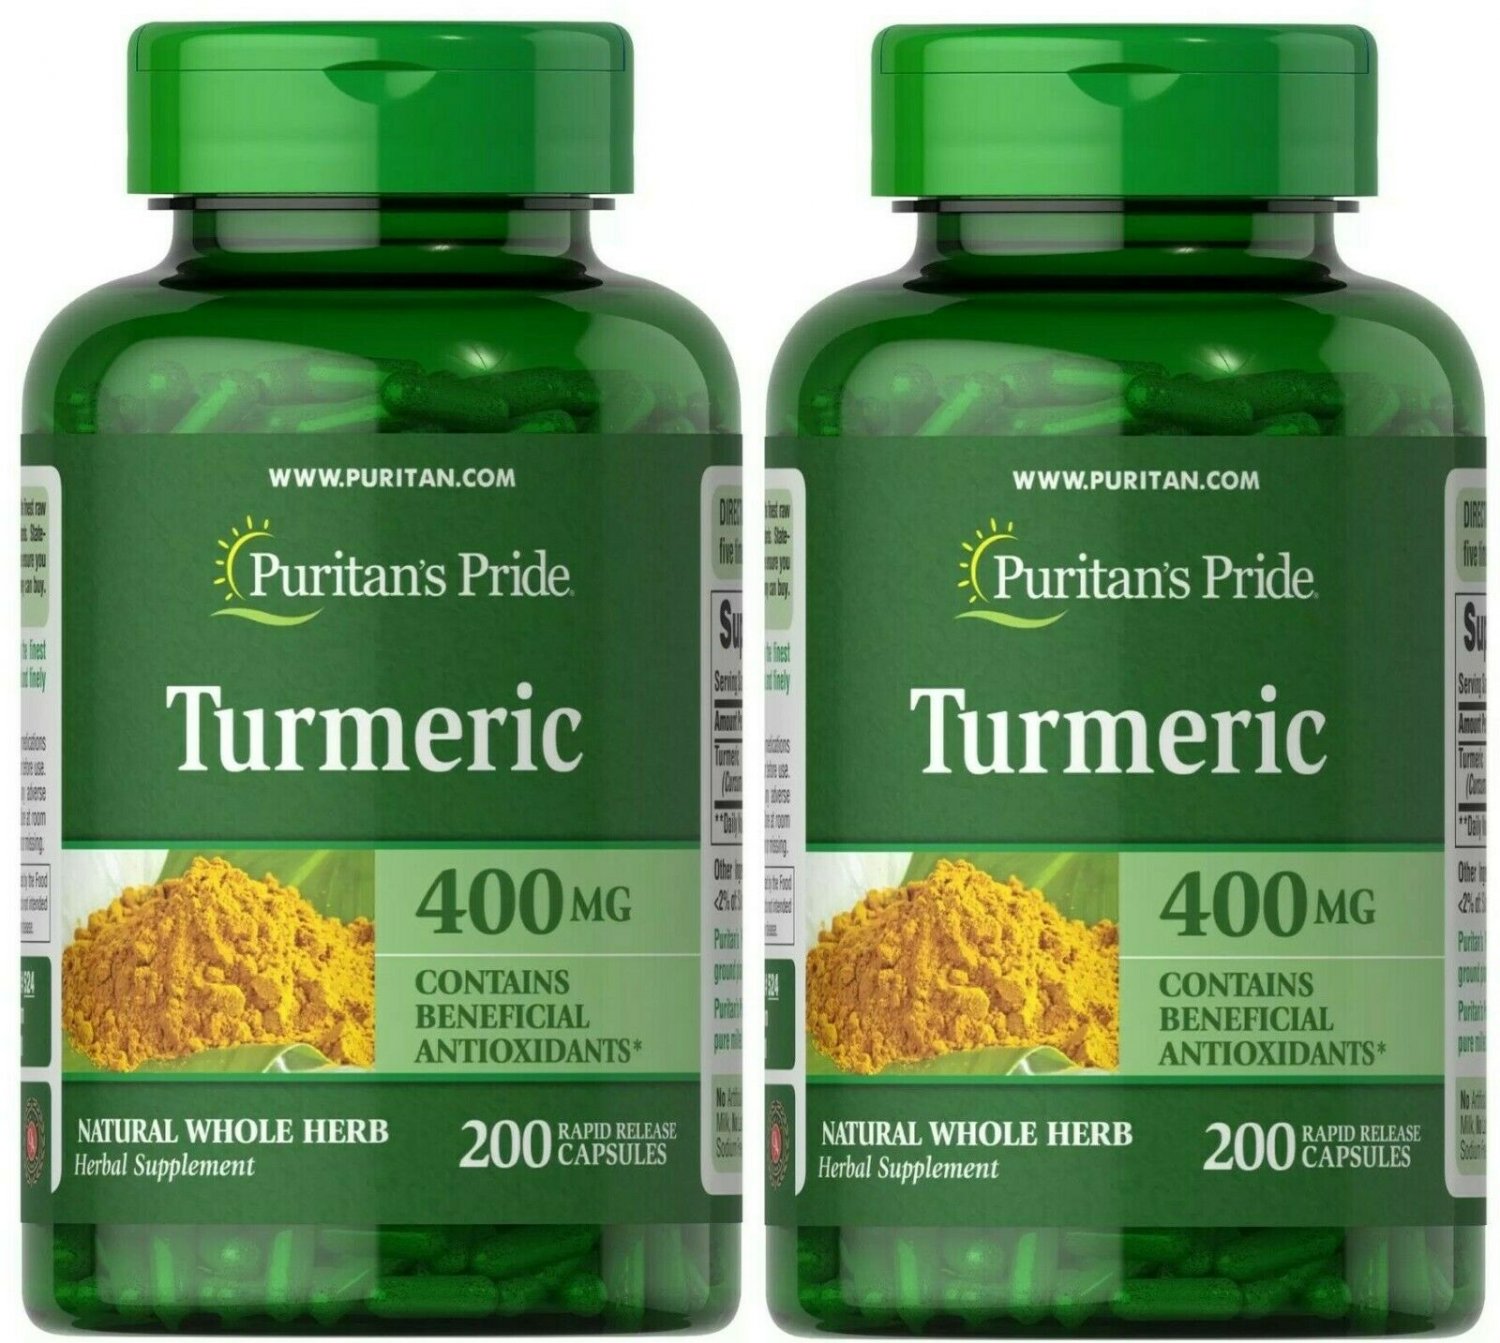 Puritan's Pride Turmeric 400 mg 2 Pack 400 Rapid Release Capsules (2x100)